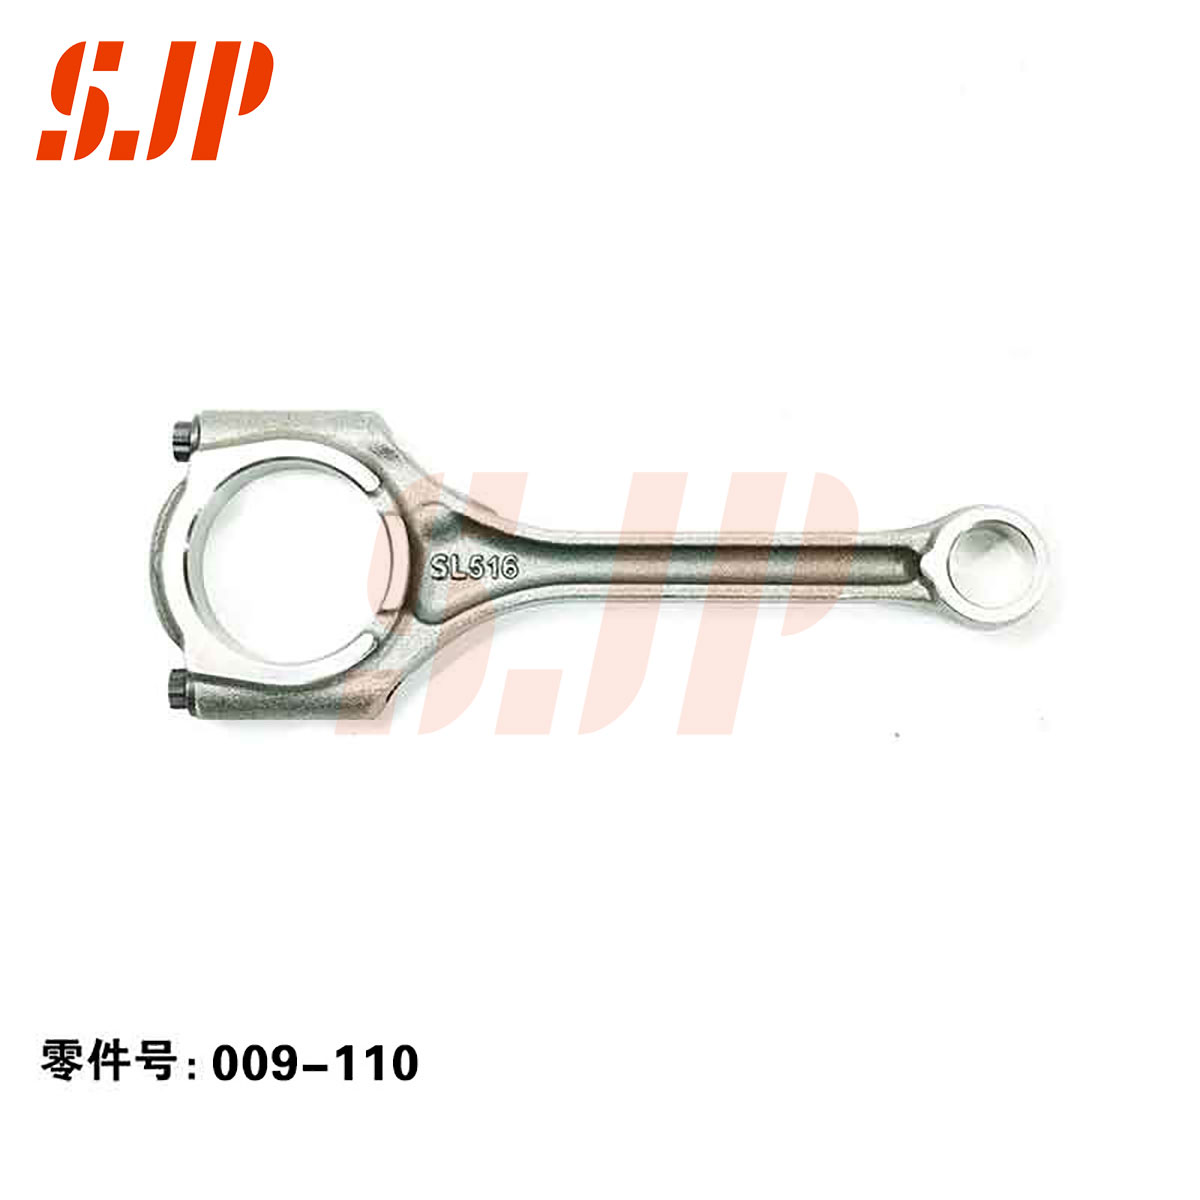 SJ-009-110 Connecting Rod For BYD 473QA/QB